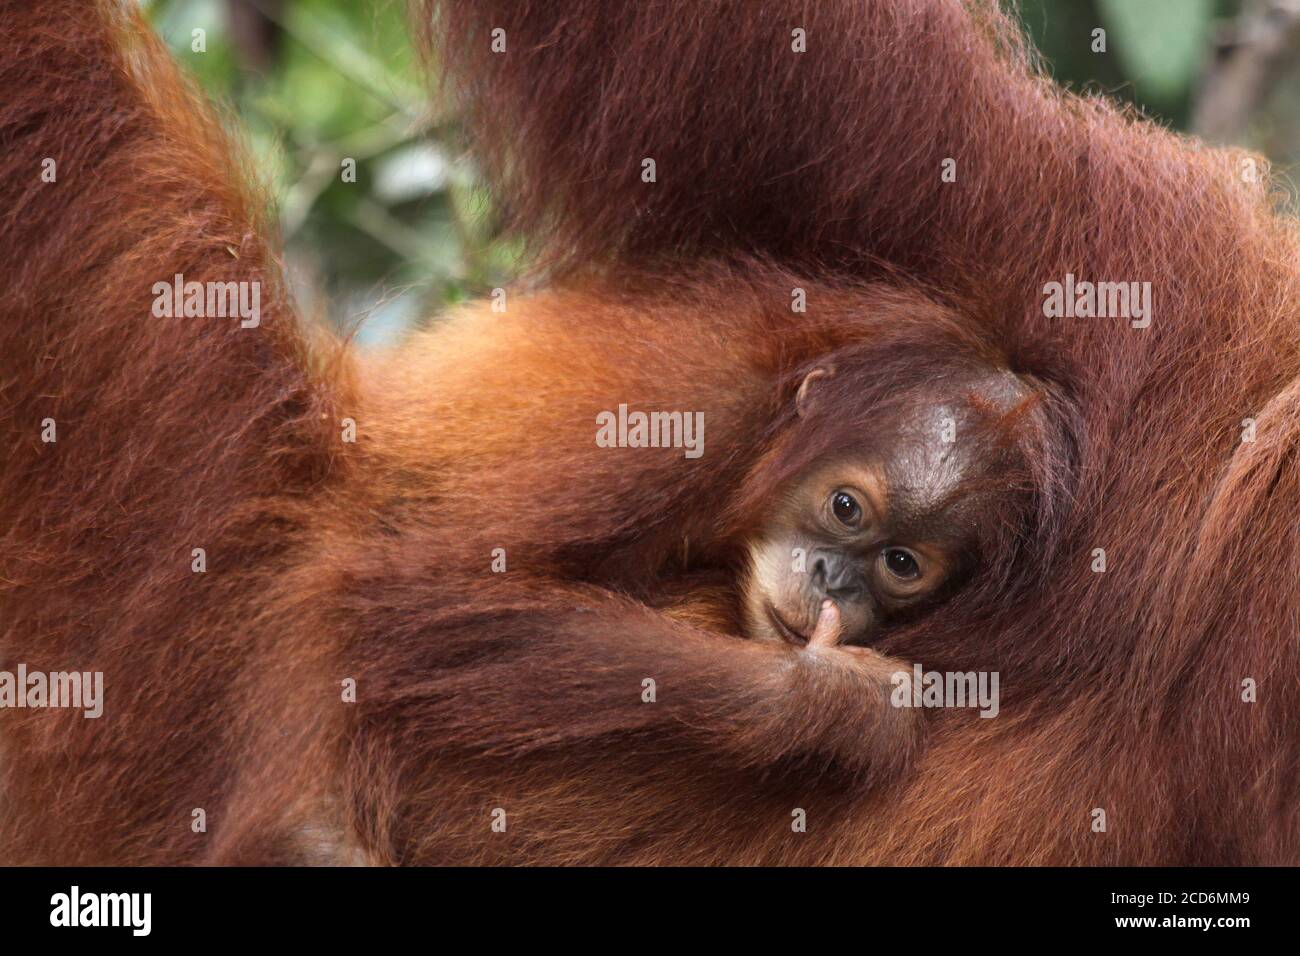 Sumatran orangutan (Pongo abelii) clinging to mothers back Stock Photo